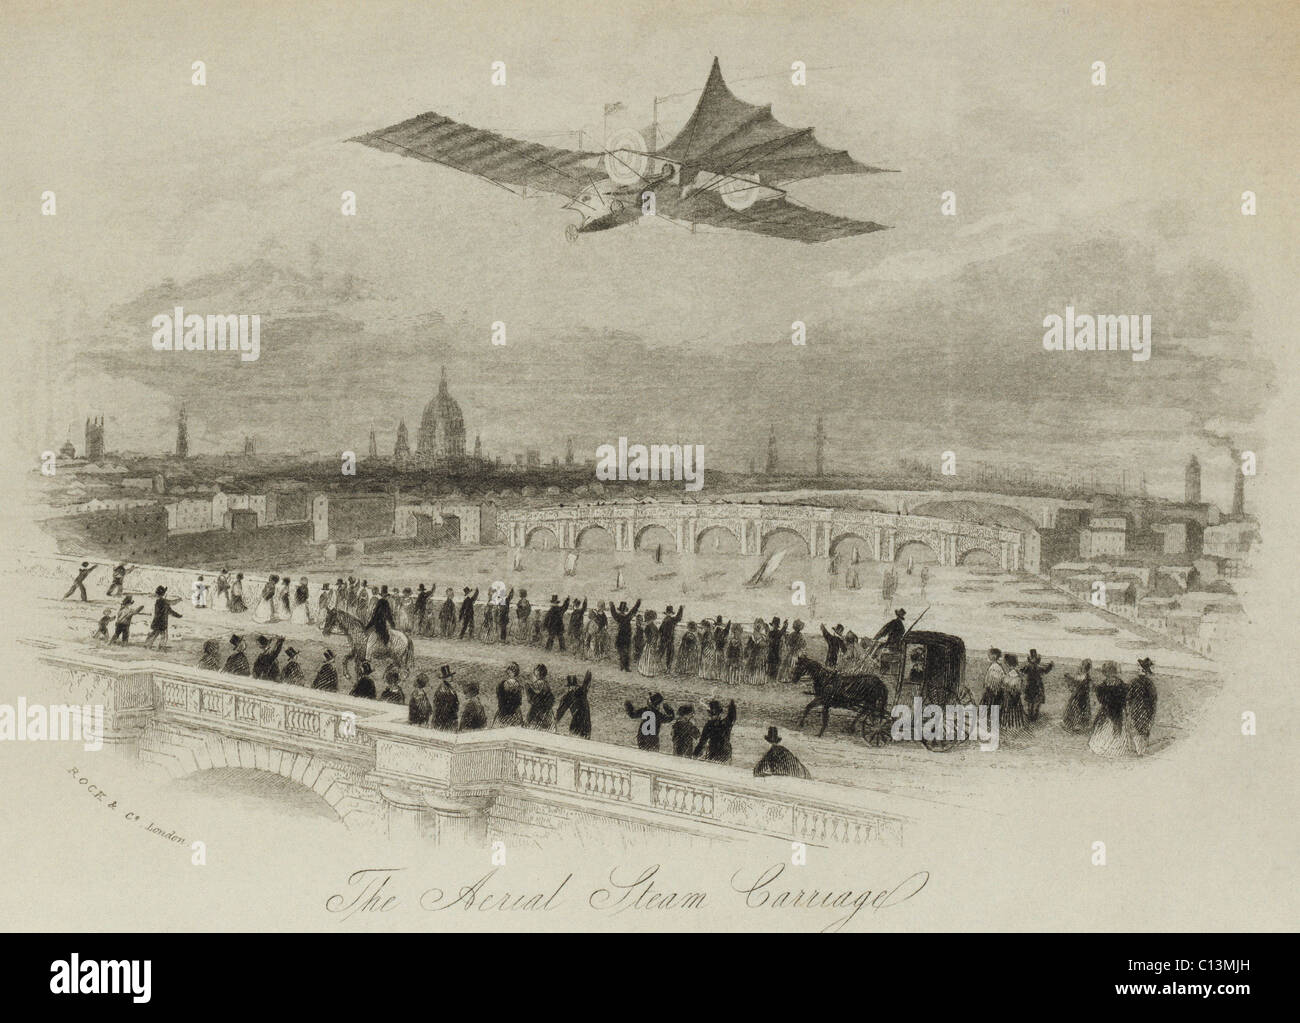 Die Luft Dampf Beförderung von britischen Erfinder William Samuel Henson in einer imaginären Flug über den Thames River London 1843 vorgeschlagen. Versuche, ein Modell des Wagens Luft Dampf waren nicht erfolgreich. LC-DIG-Ppmsca-02570 Stockfoto